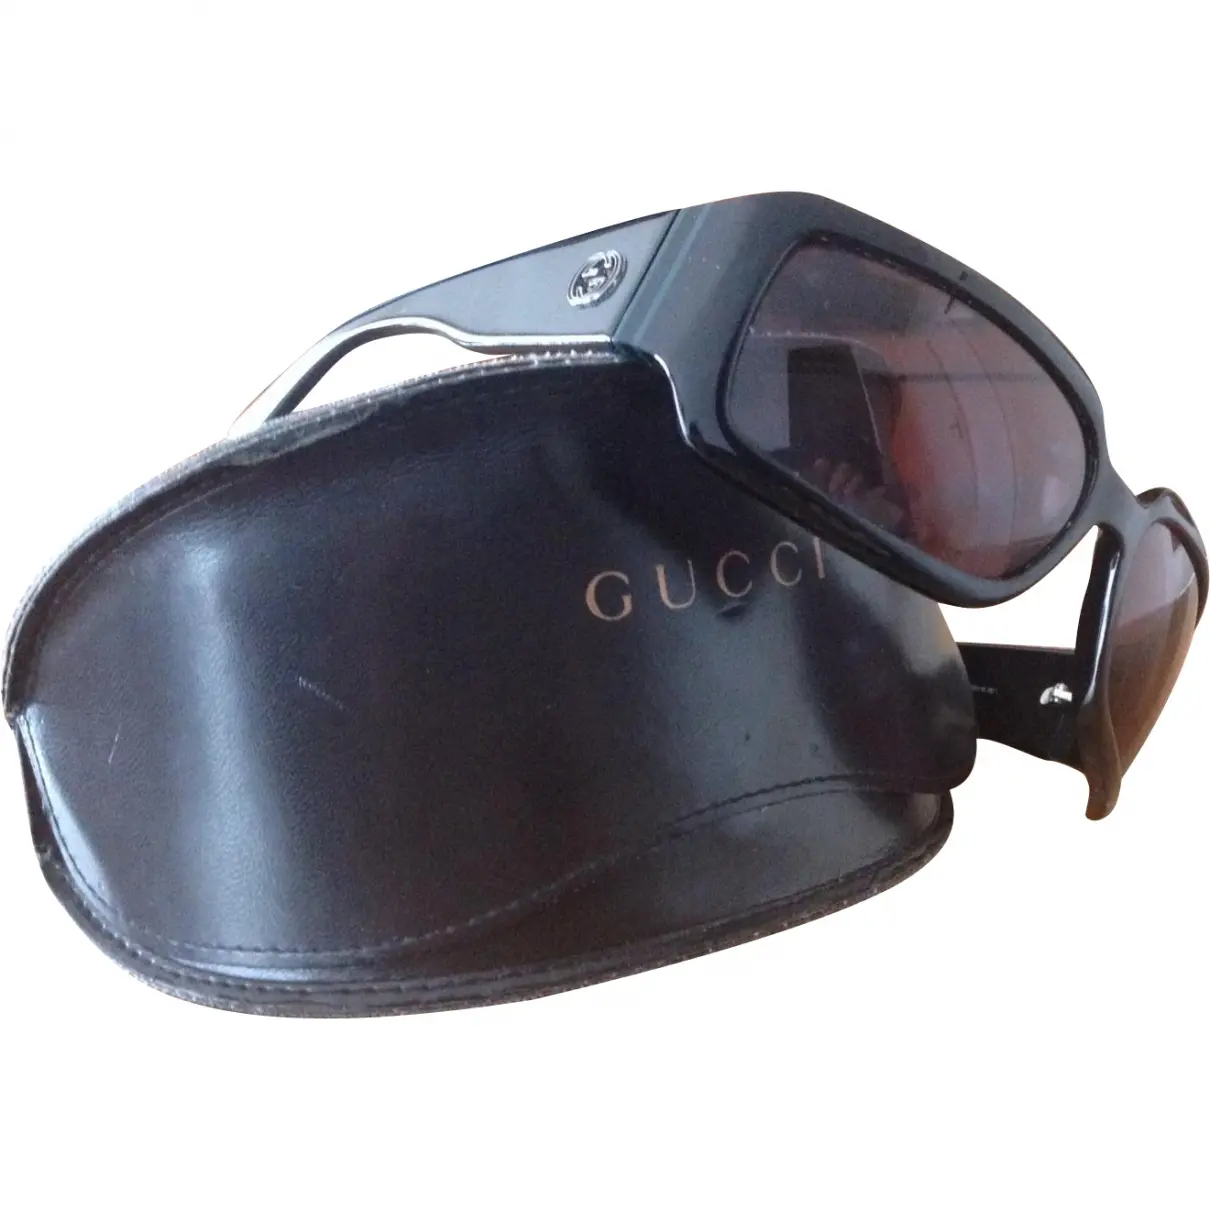 Black Plastic Sunglasses Gucci